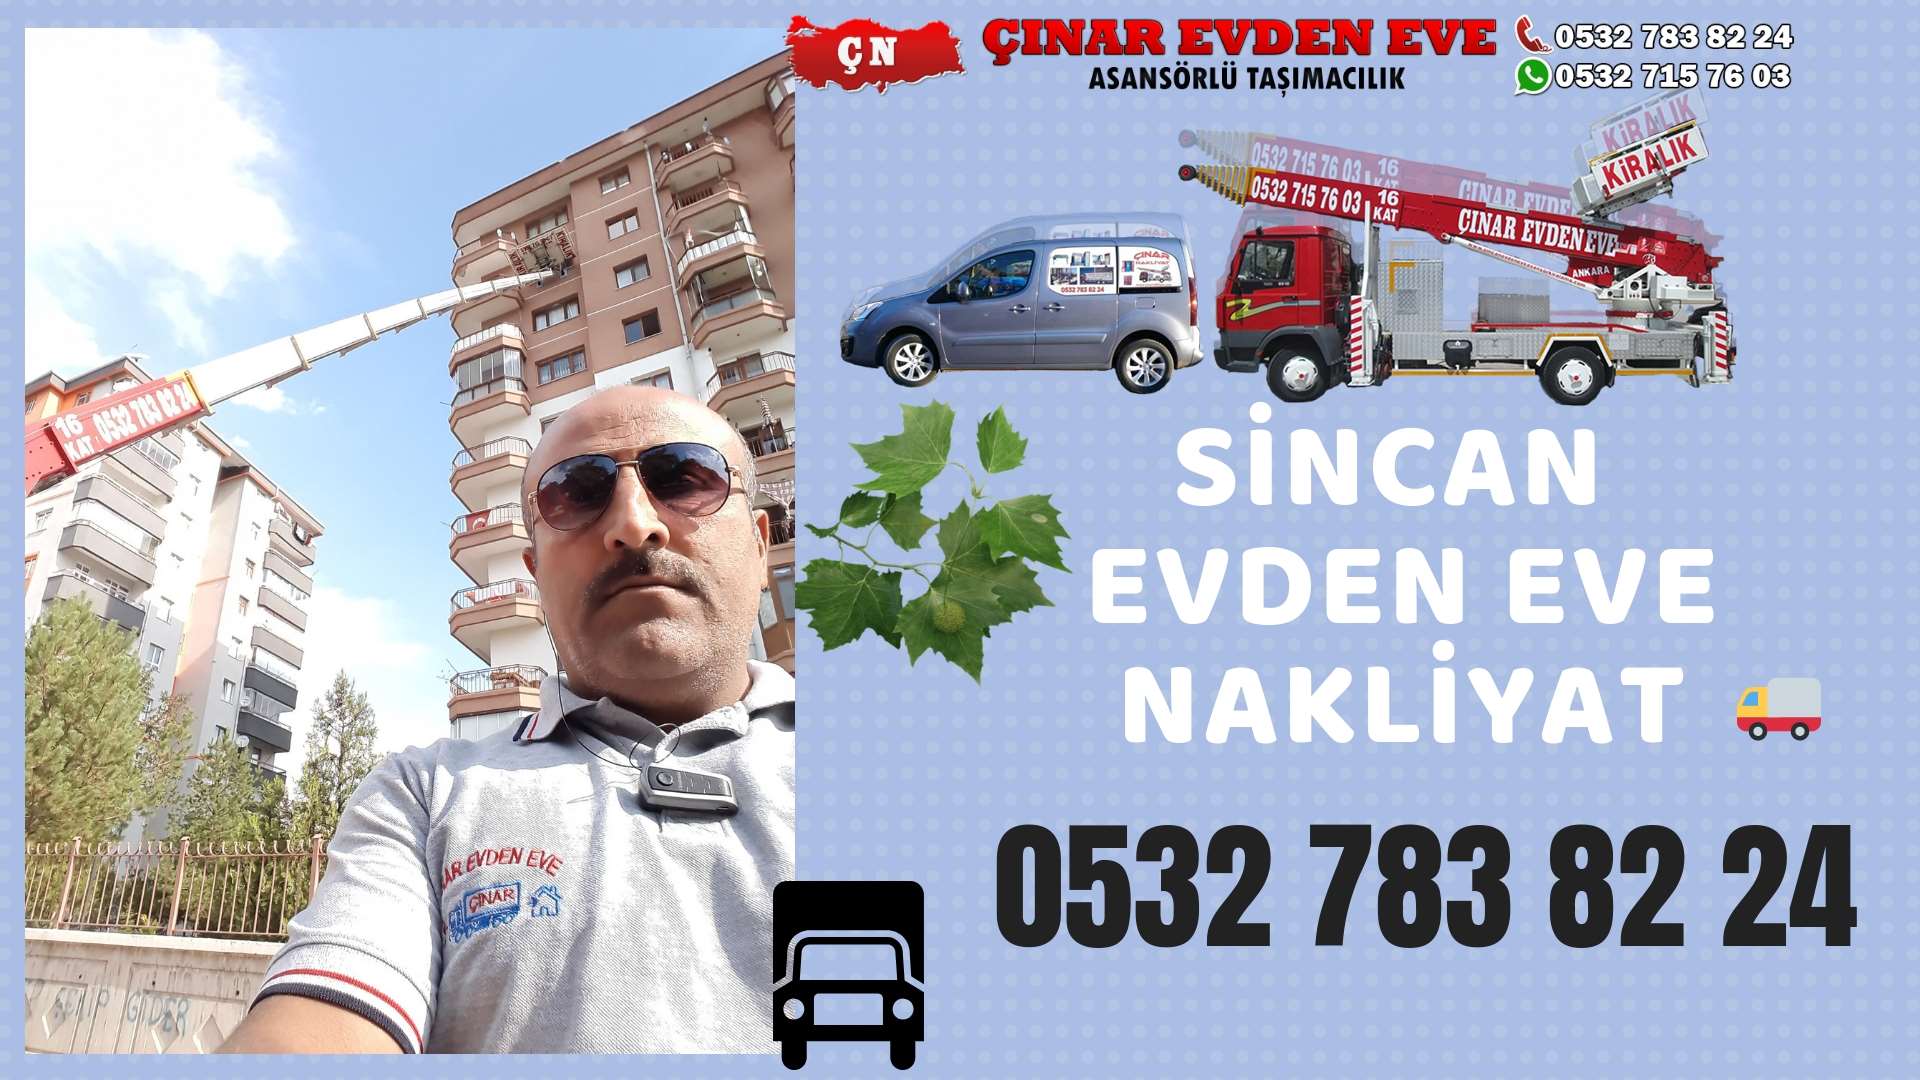 Ankara Akyurt Evden Eve Nakliyat, Asansörlü Taşımacılık, Ofis / İş Yeri Taşıma 0532 715 76 03